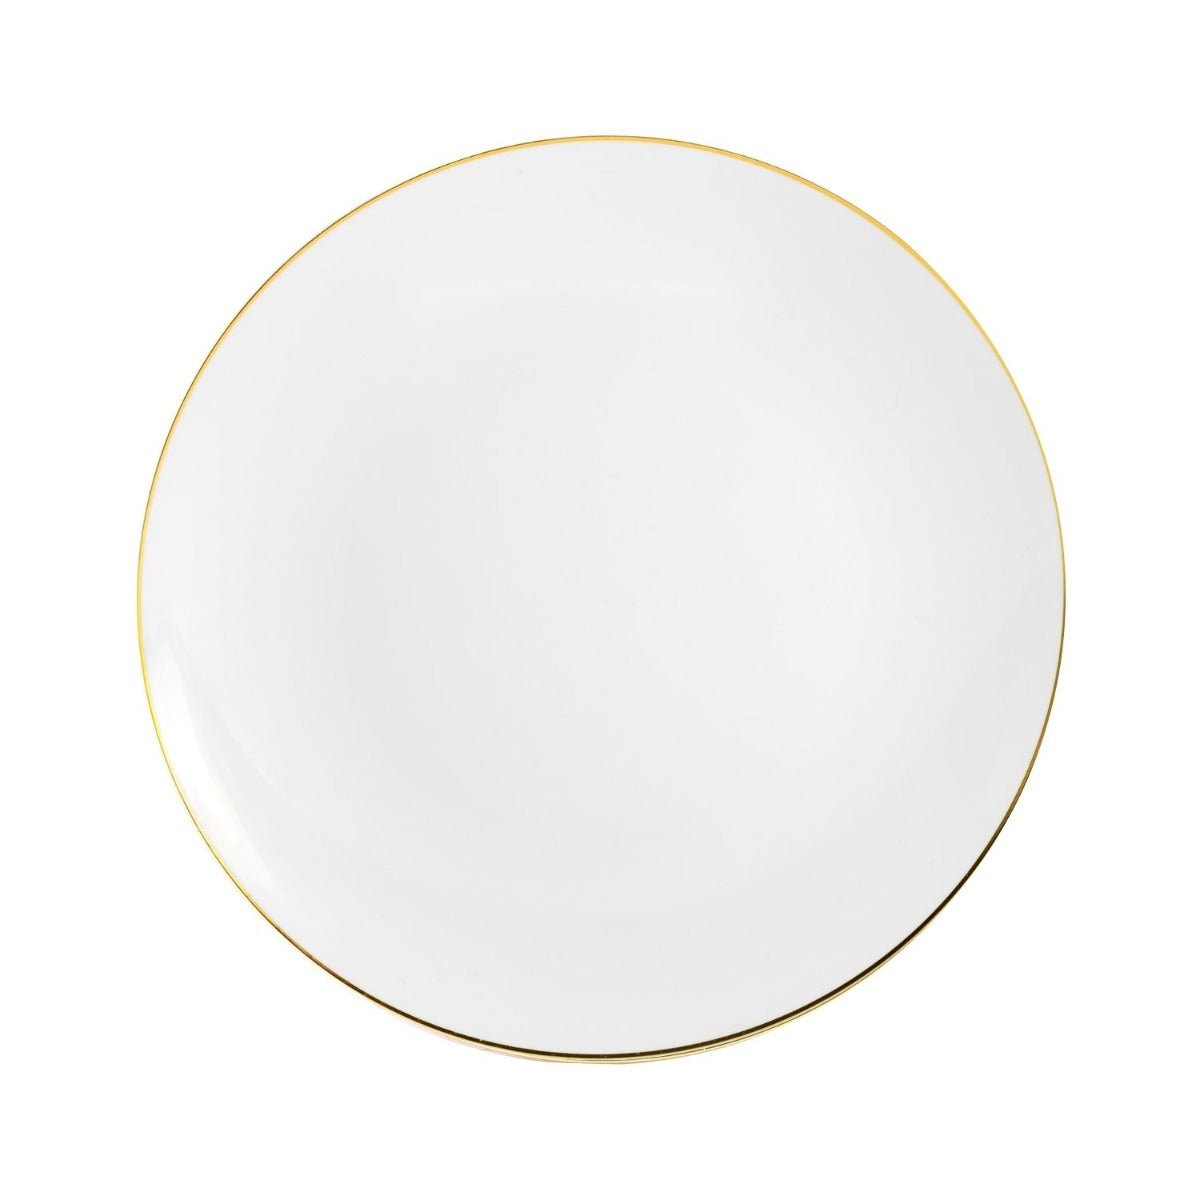 10" Classic Gold Design Plastic Plates (120 Count)